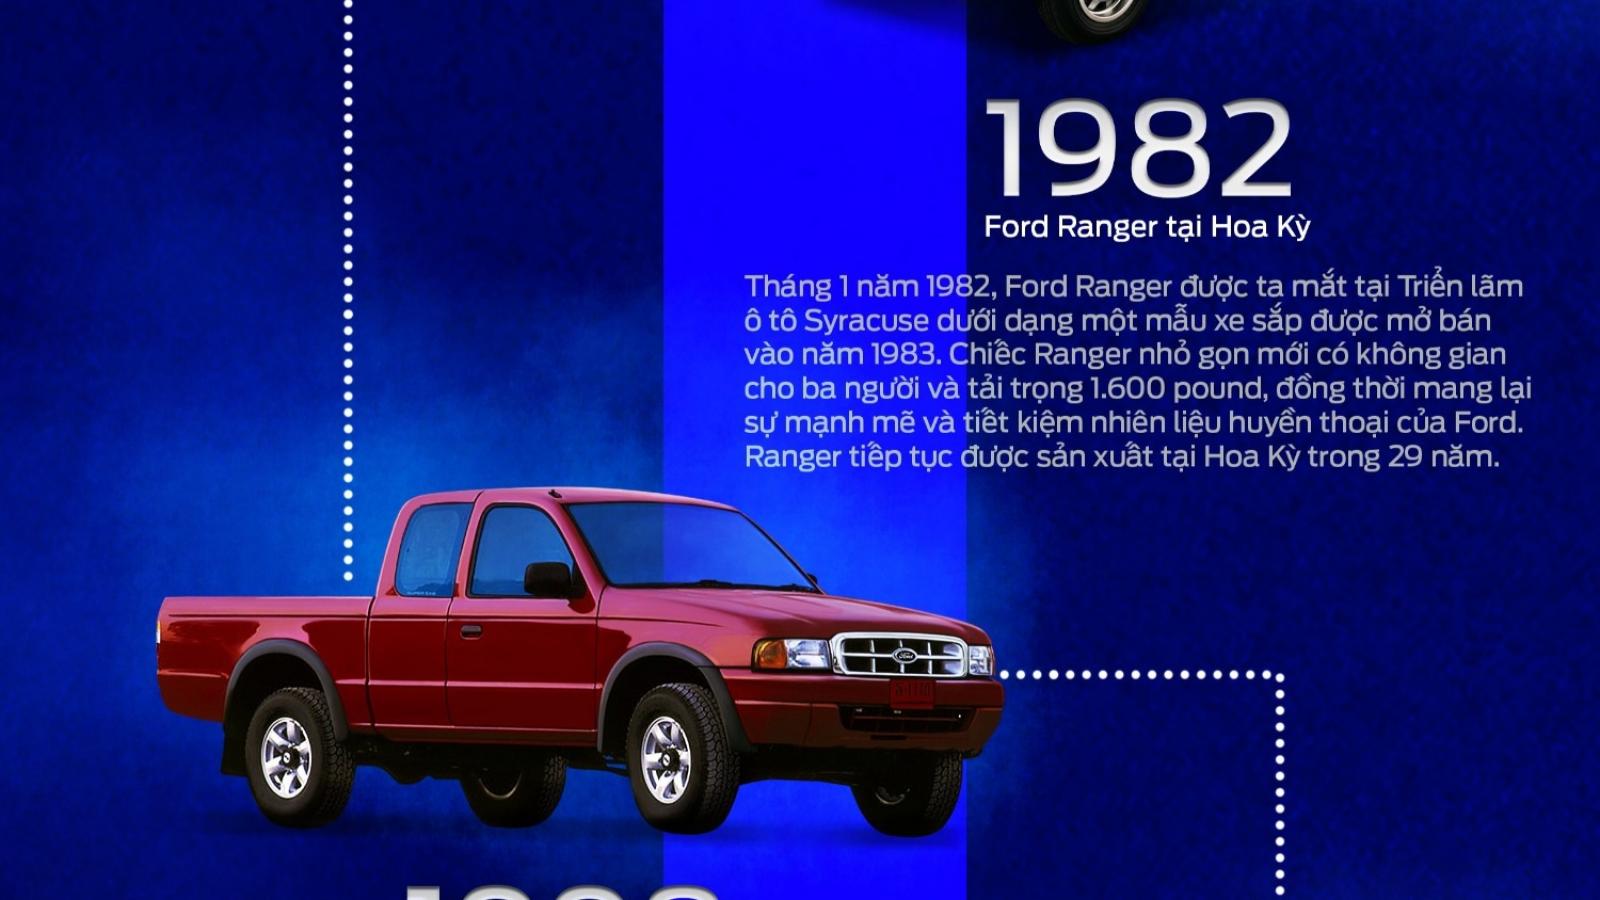 Ford Ranger đã “tiến hóa” như thế nào